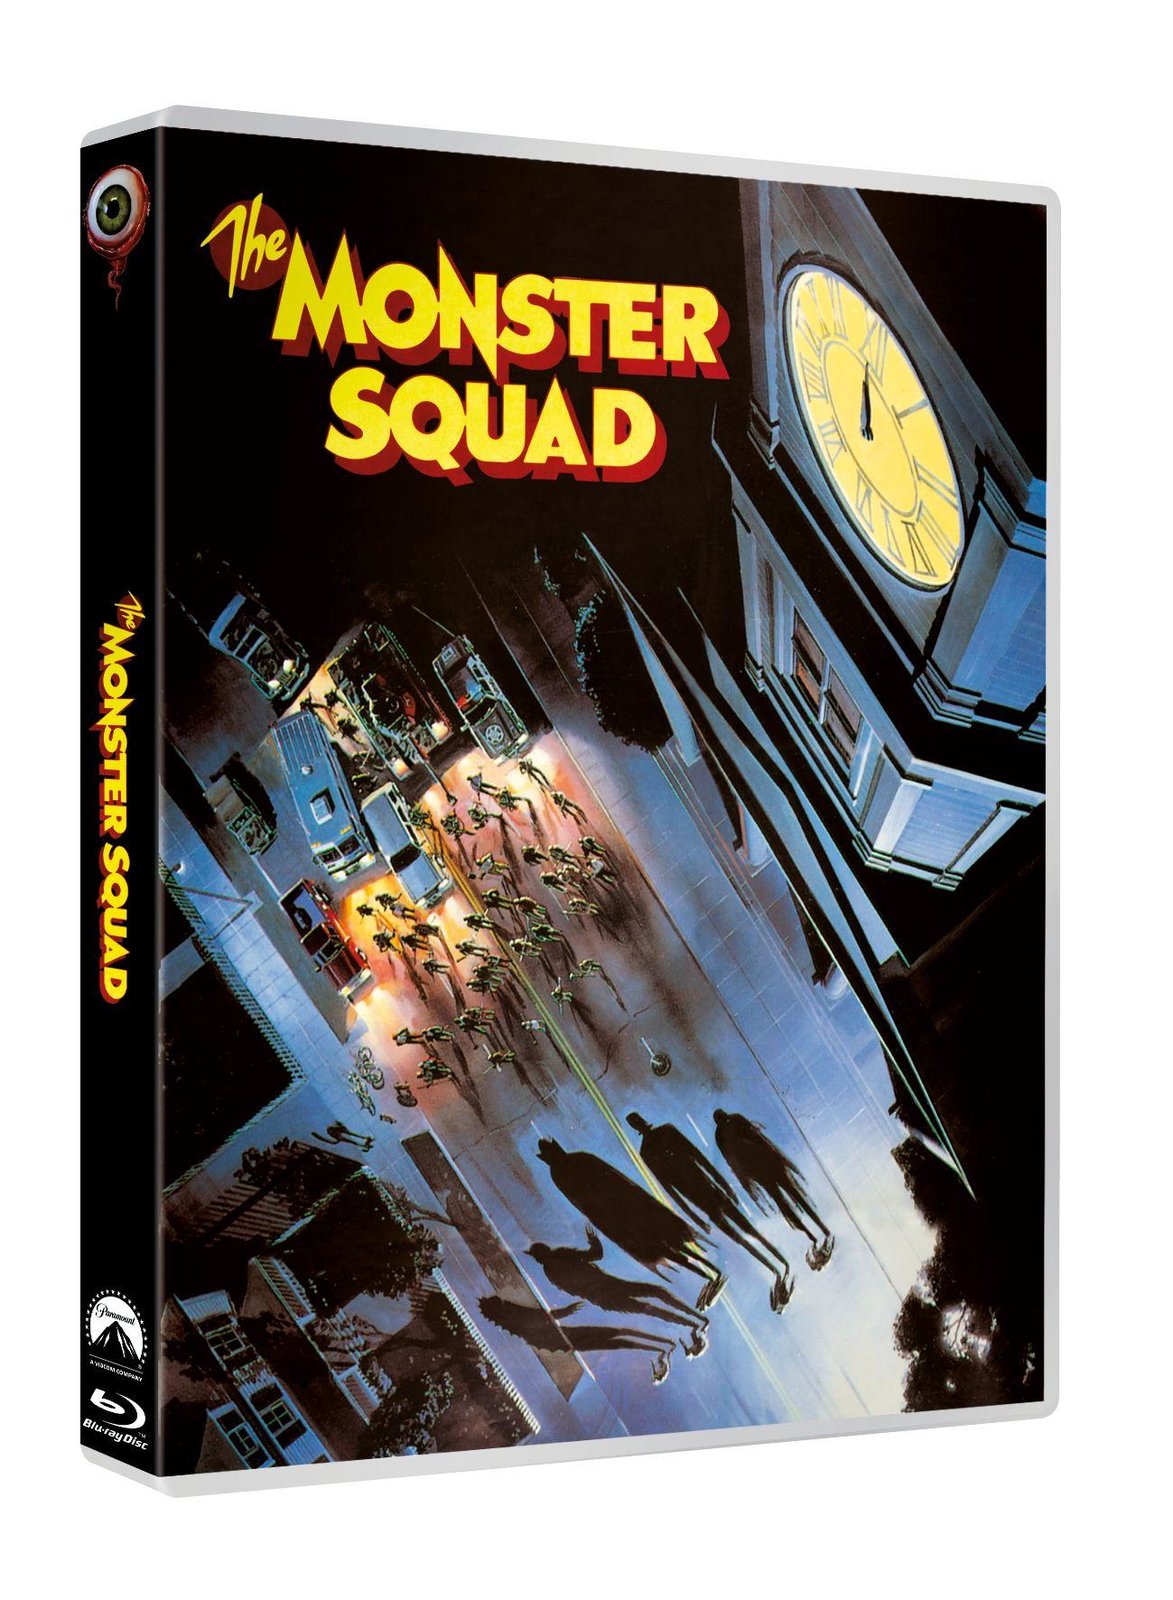 Monster Busters (Special Edition) Blu-ray - Mehrfach ausgezeichneter Kultfilm von 1987 aus den USA - mit Wendecover-Motiv und umfangreichen Extras  (Blu-ray Disc)